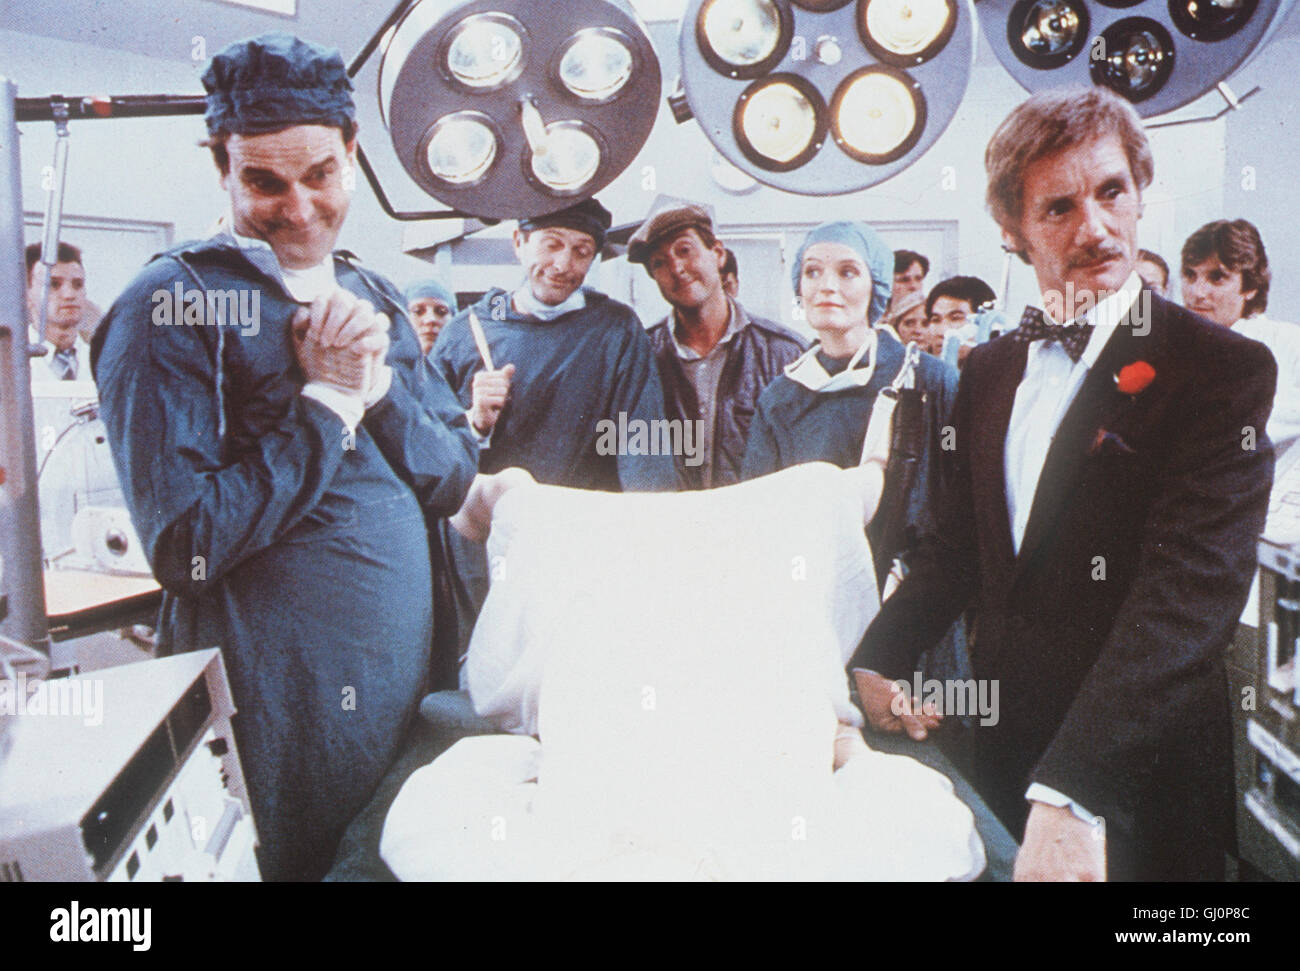 DIE WUNDERBARE WELT DES SCHWACHSINNS- RTL II 2110 In diesem Comedy-Special sind die besten Sketche britischer bekannter und kanadischer comici zu sehen. Mit dabei: Monty Python, hier in einer Szene aus 'DER SINN des Lebens". Foto Stock